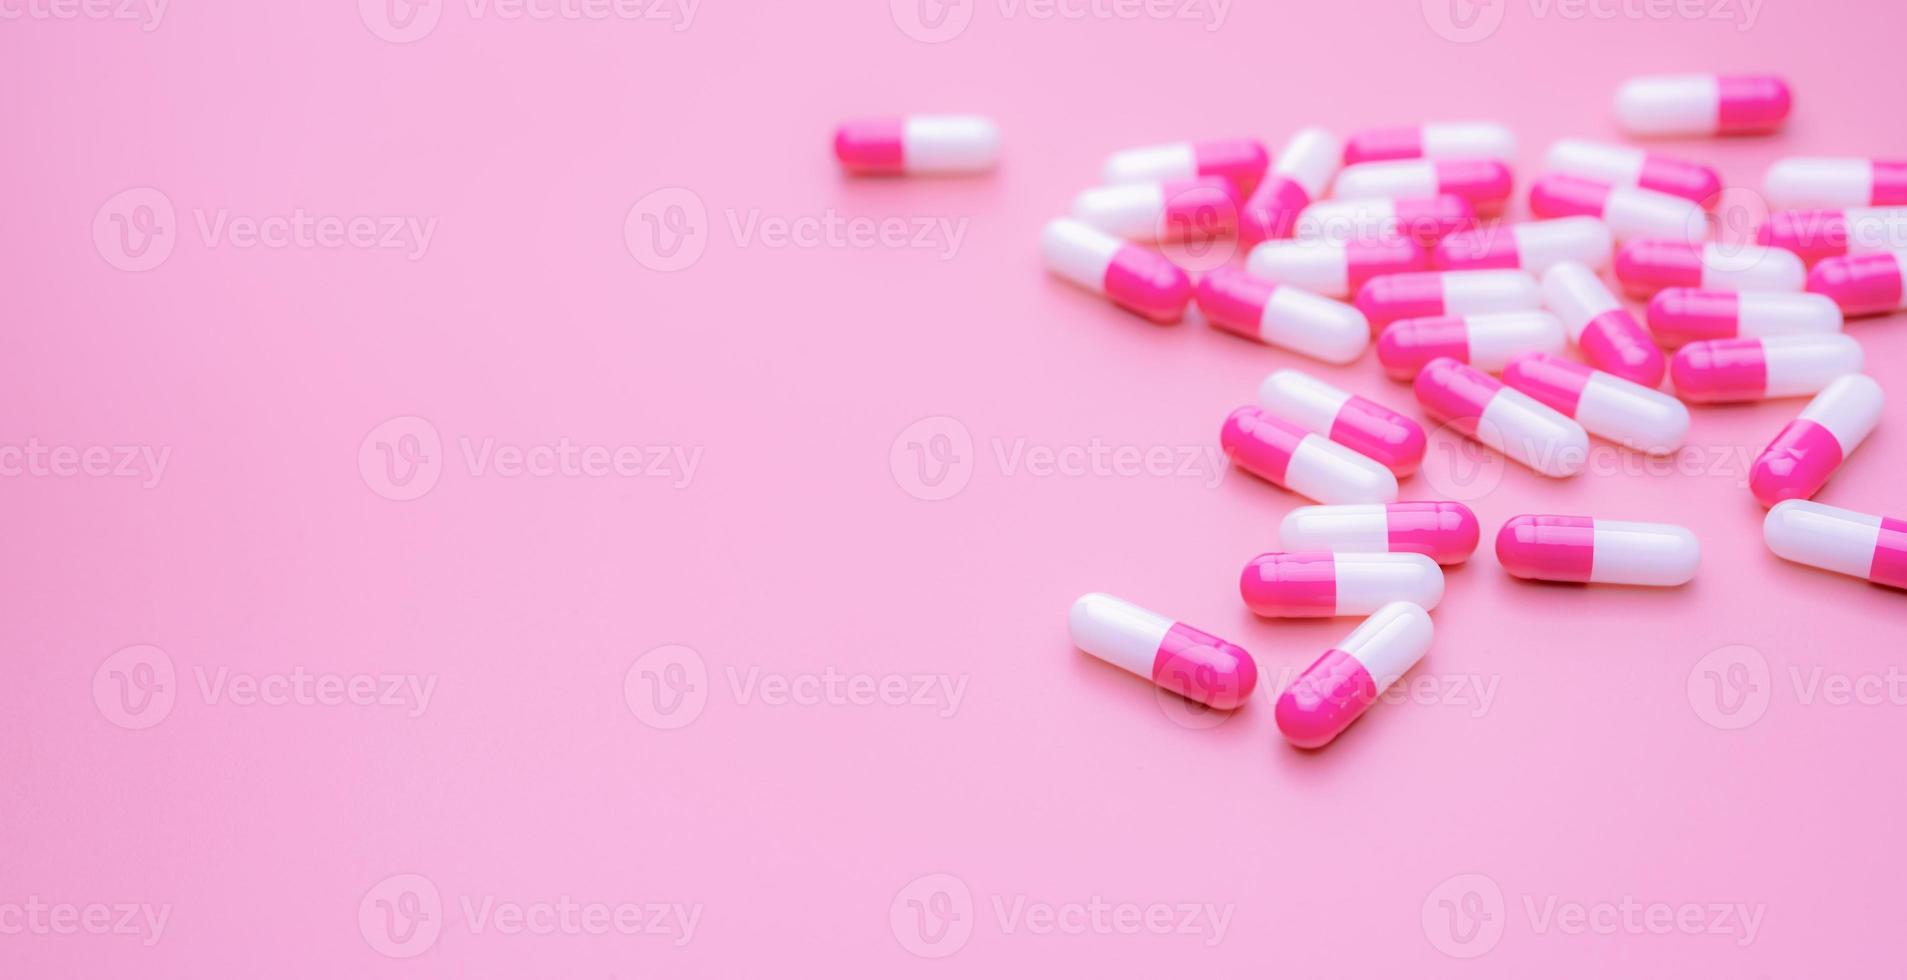 píldora de cápsulas antibióticas rosa-blancas esparcidas sobre fondo rosa con espacio. pancarta de farmacia. píldoras de cápsula antibiótica. fondo de pantalla de la tienda de farmacia. industria farmacéutica. fármacos antimicrobianos. cuidado de la salud. foto